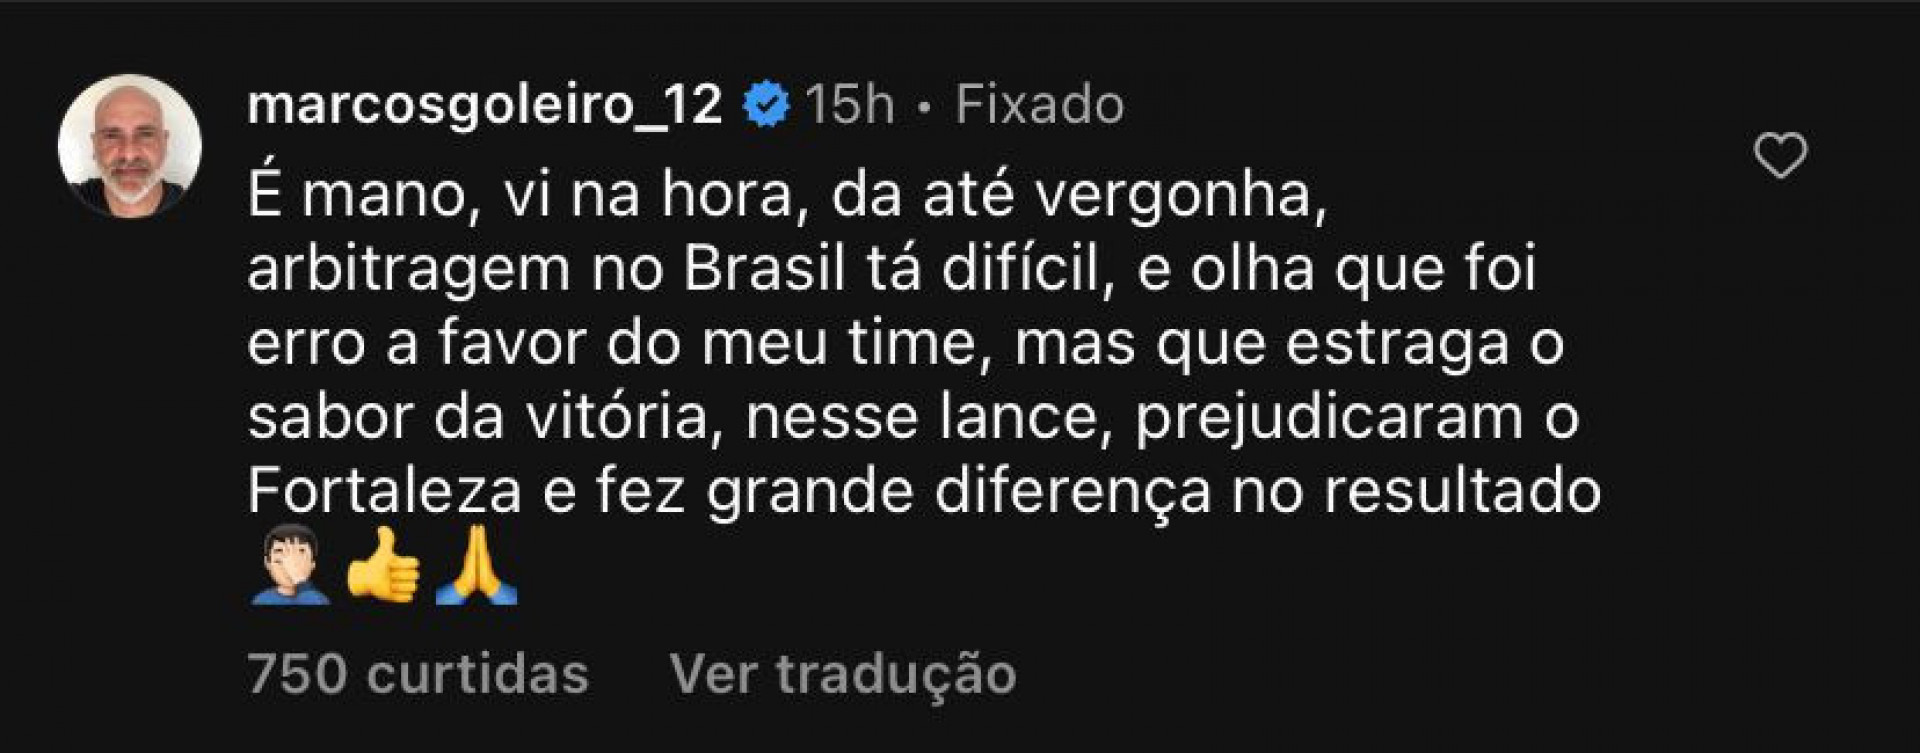 Comentário de Marcos, ídolo do Palmeiras, no Instagram - Foto: Reprodução/Instagram